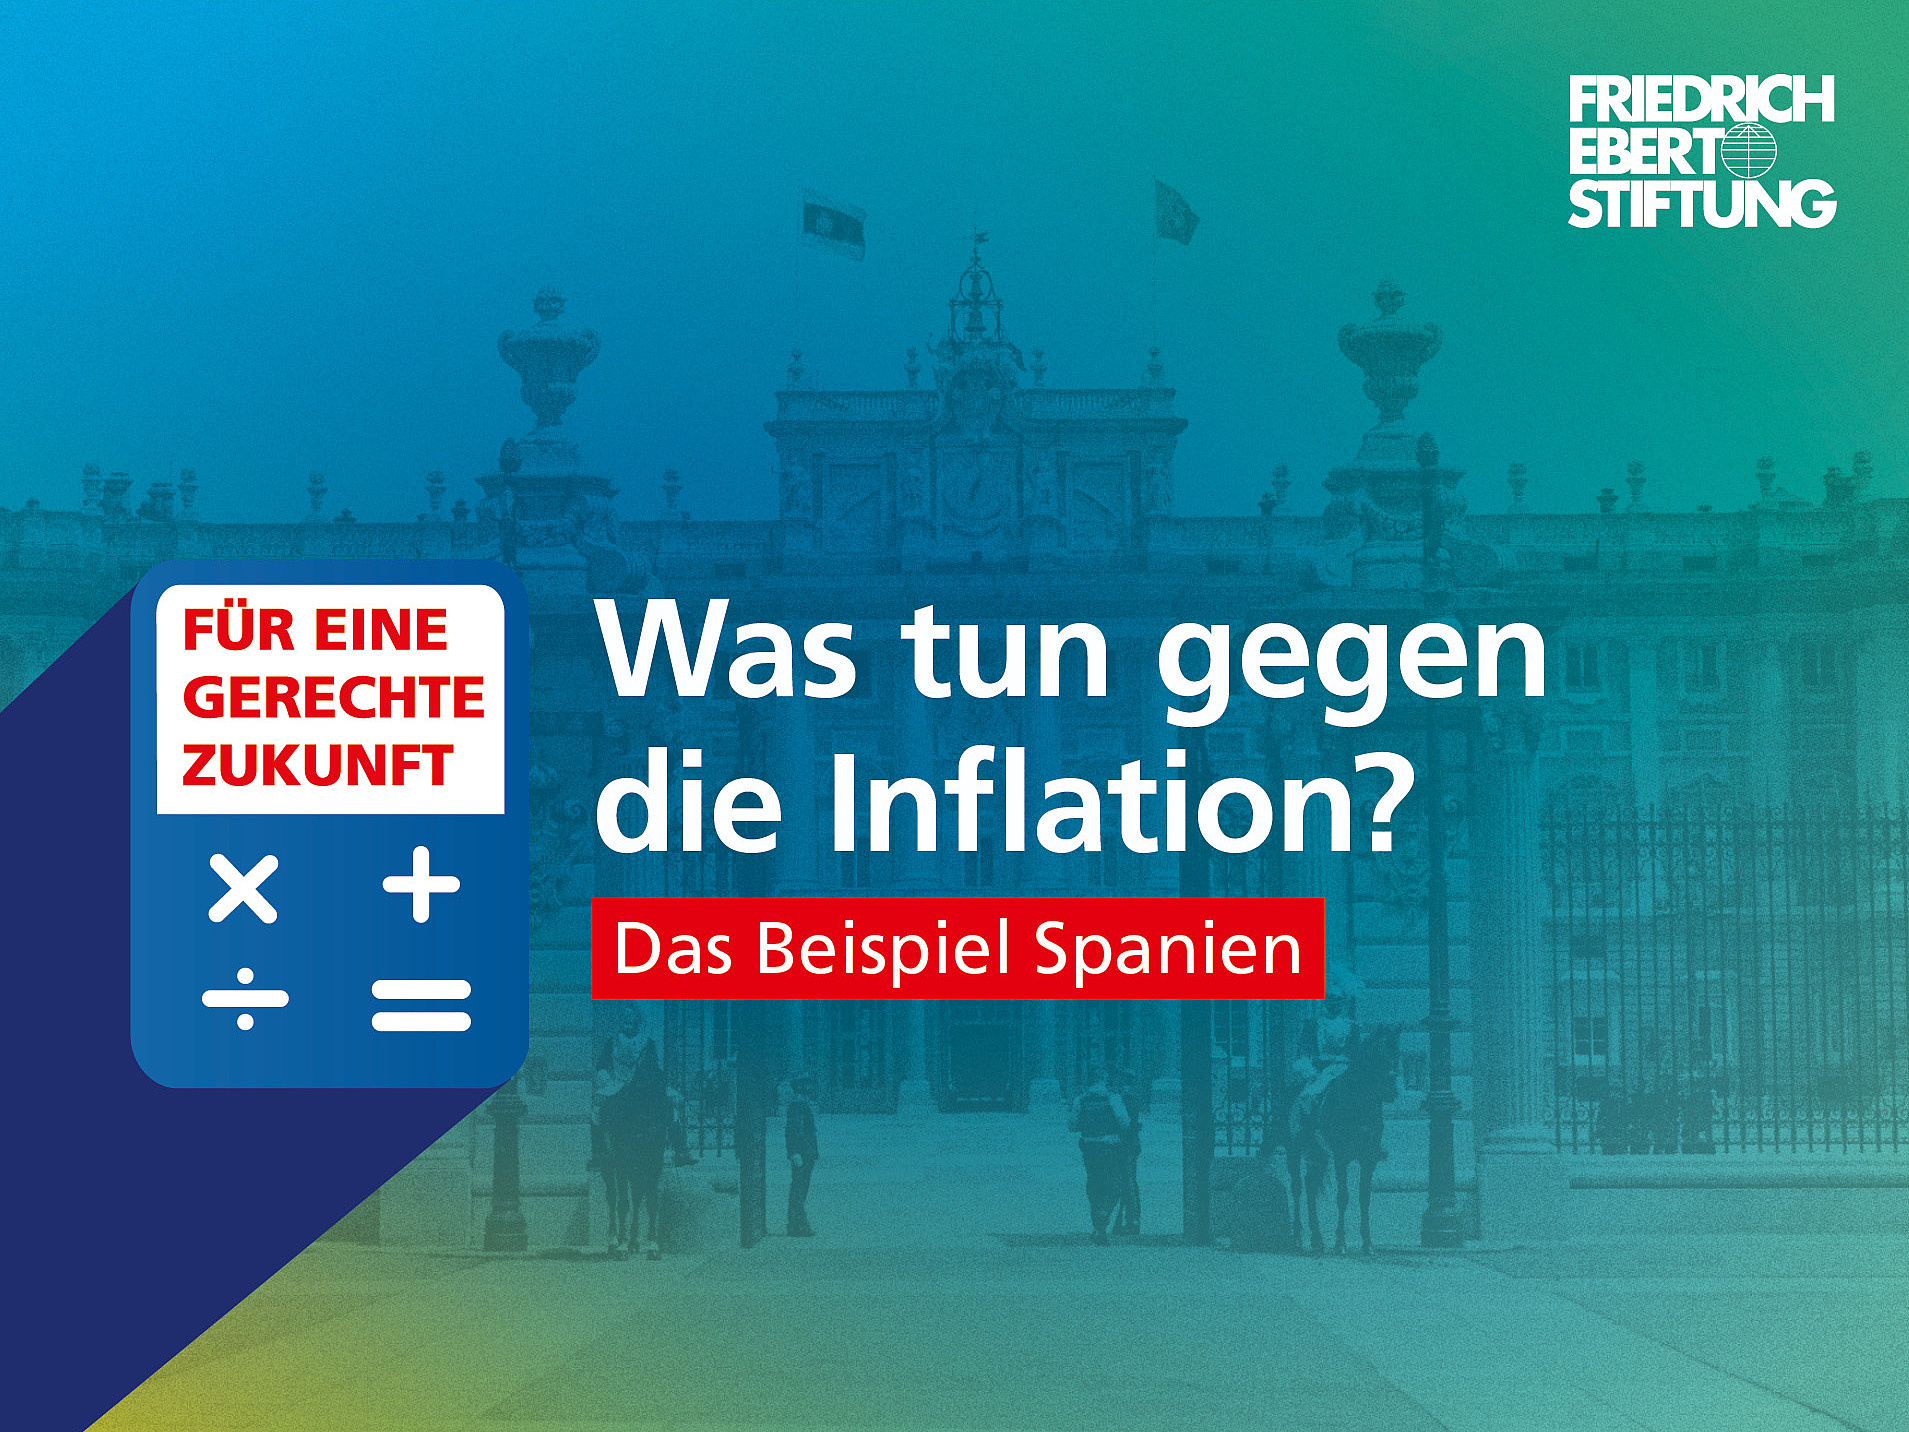 Blau-grün-gelb verwischter Hintergrund. Darauf der weiße Schriftzug "Was tun gegen die Inflation? Das Beispiel Spanien".